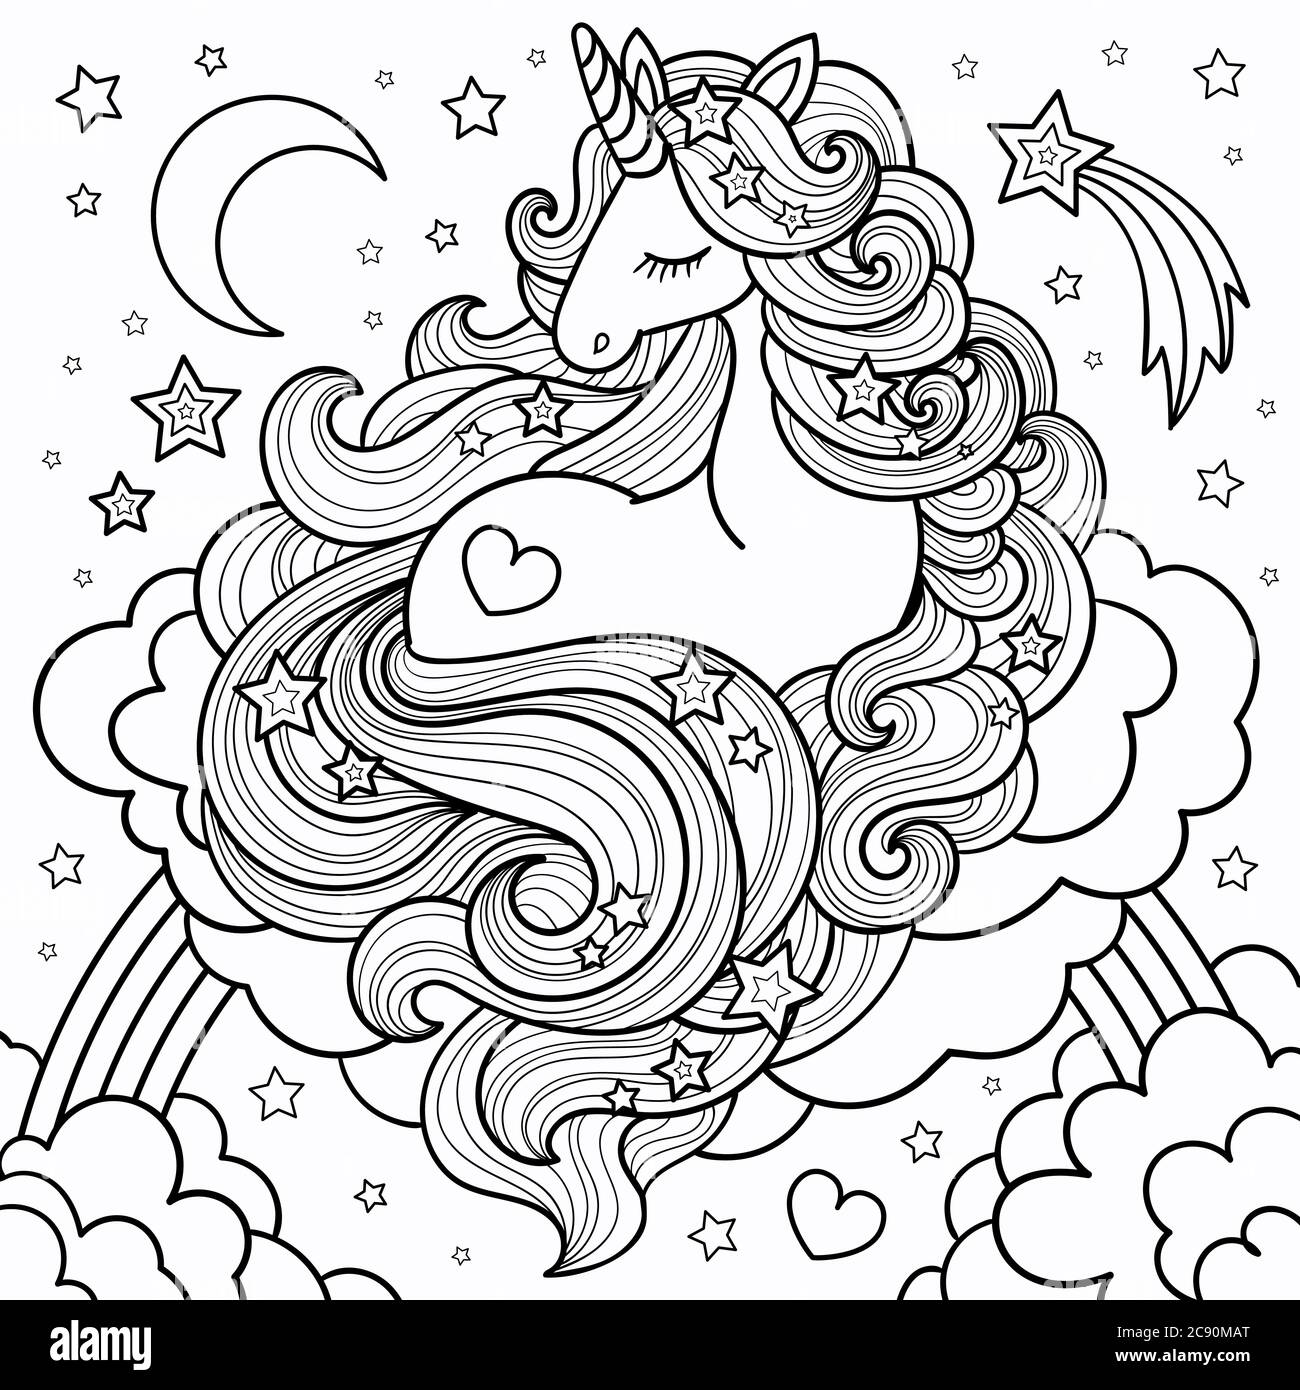 Un bel unicorno con una lunga mania che giace sulle nuvole e sull'arcobaleno. Disegno lineare, in bianco e nero. Per colorare libri, tatuaggi, cartoline, stampe, Illustrazione Vettoriale